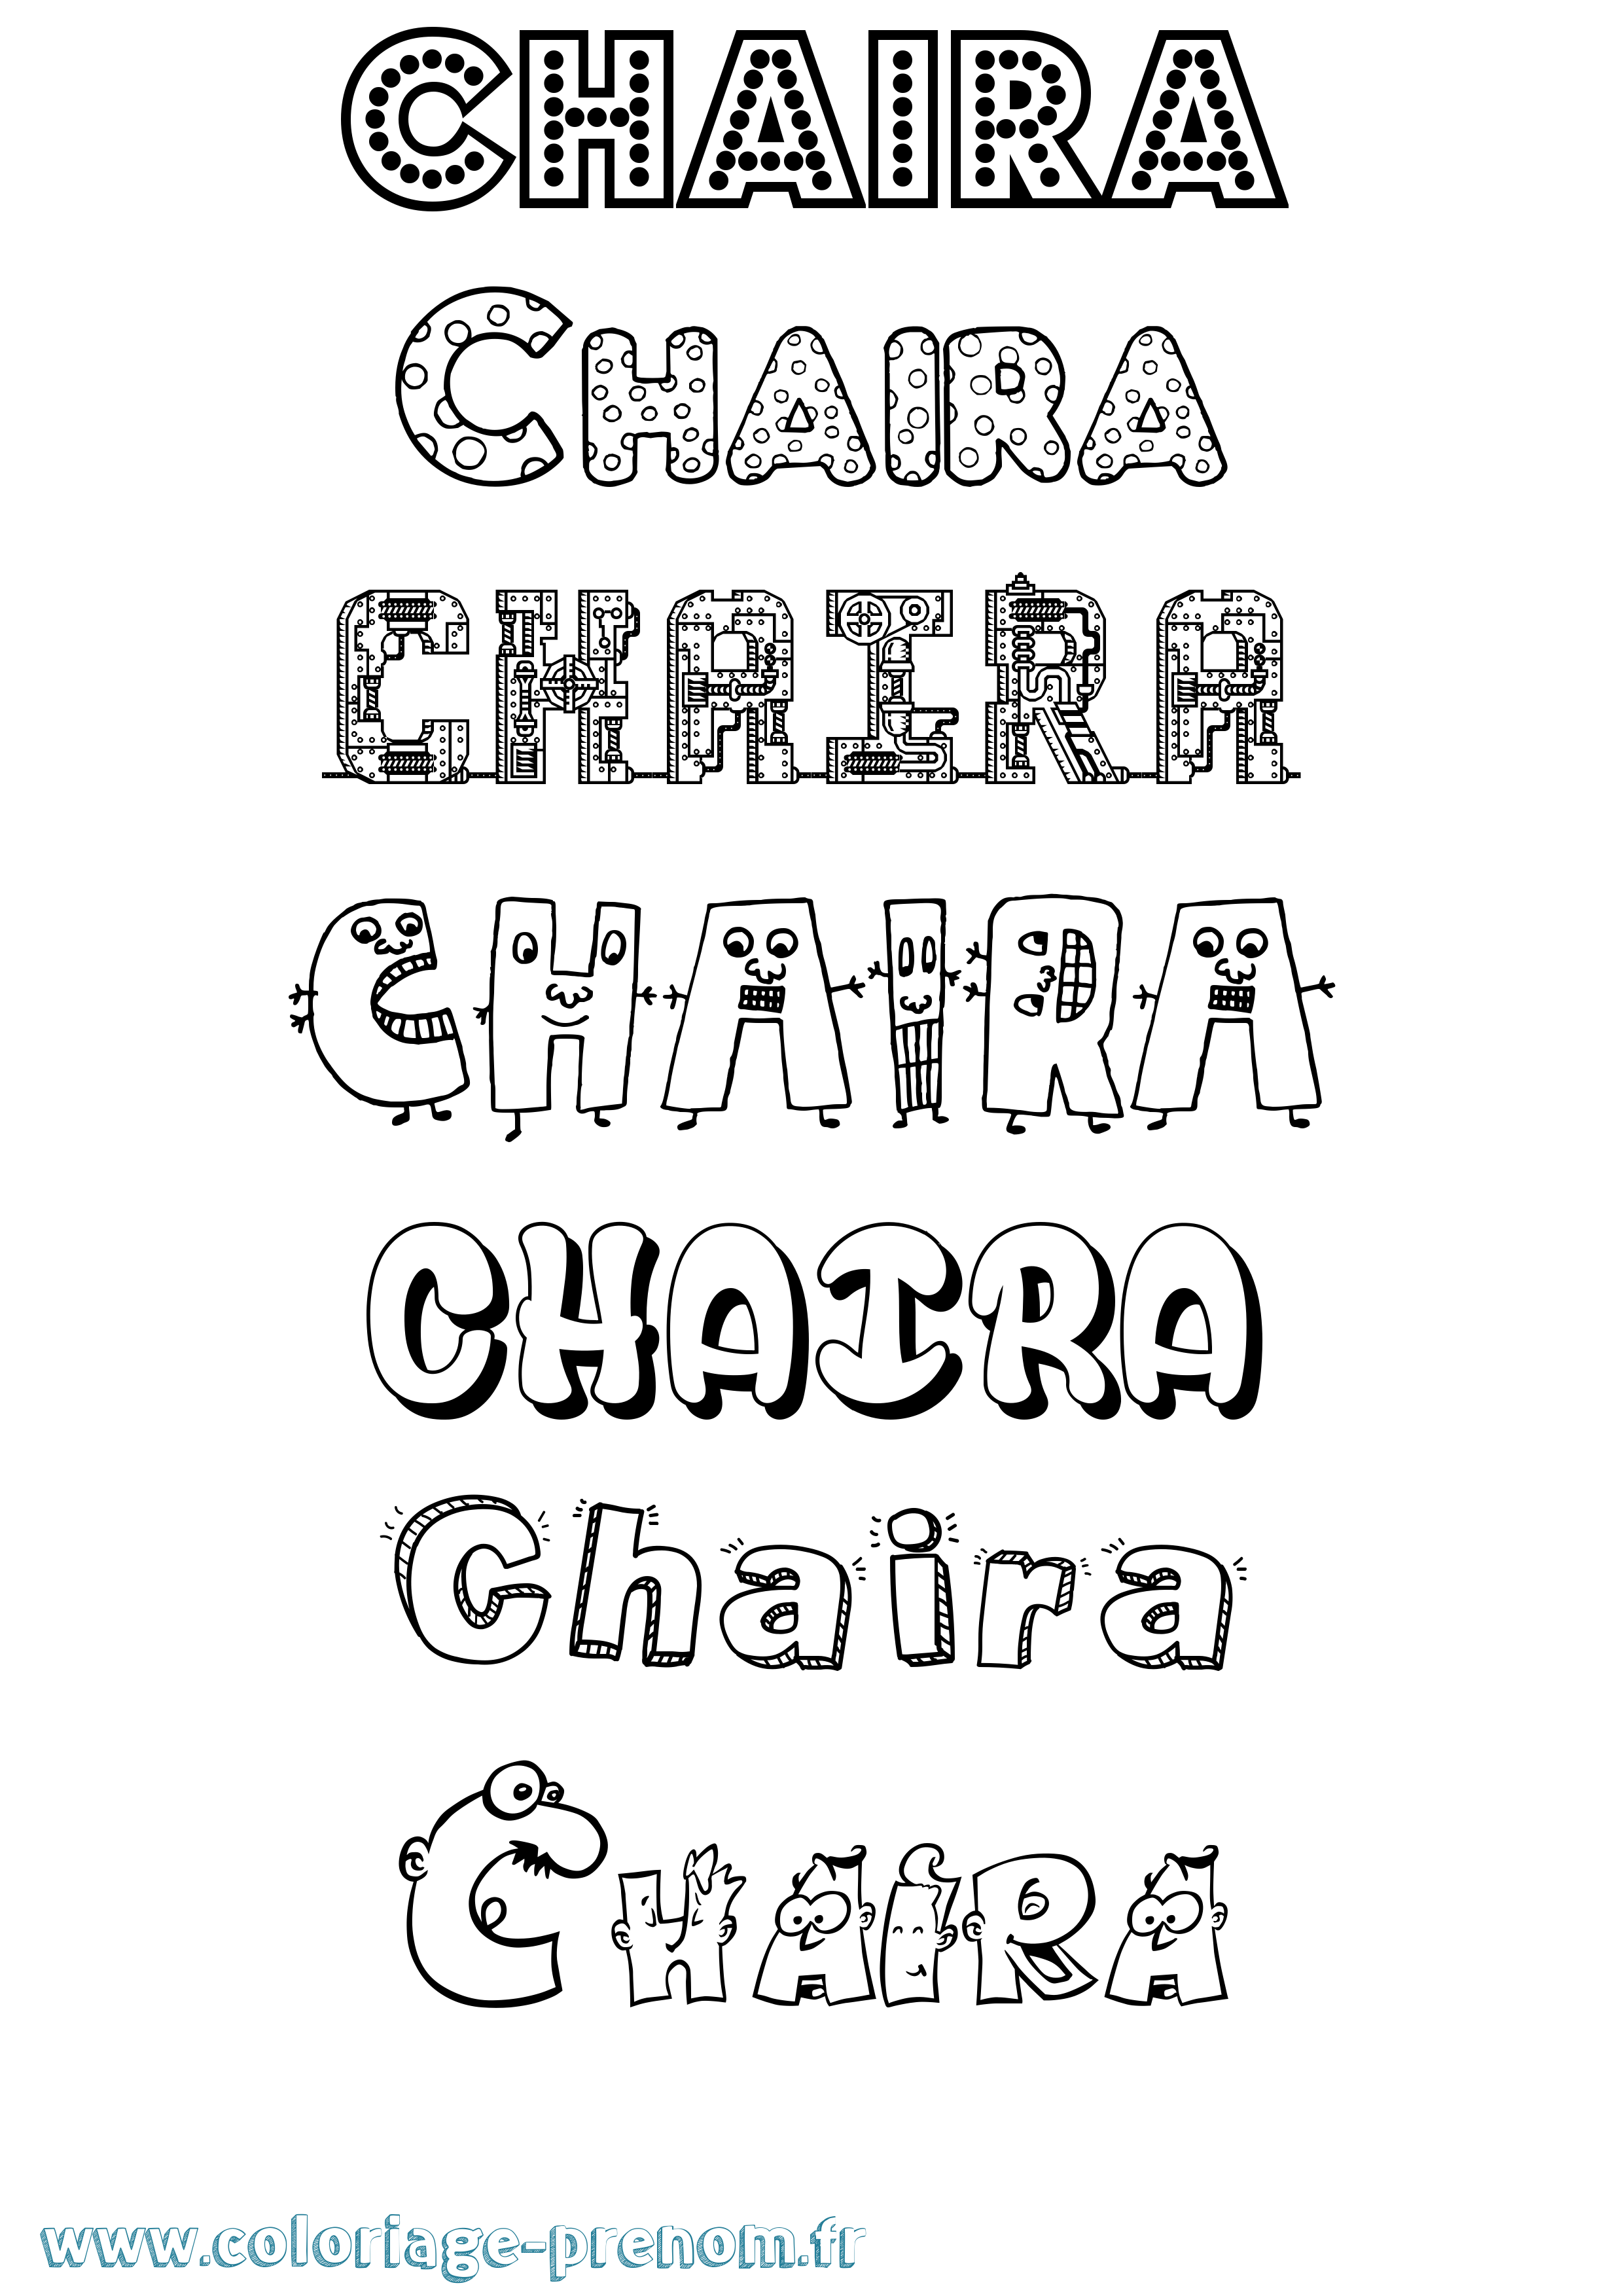 Coloriage prénom Chaira Fun